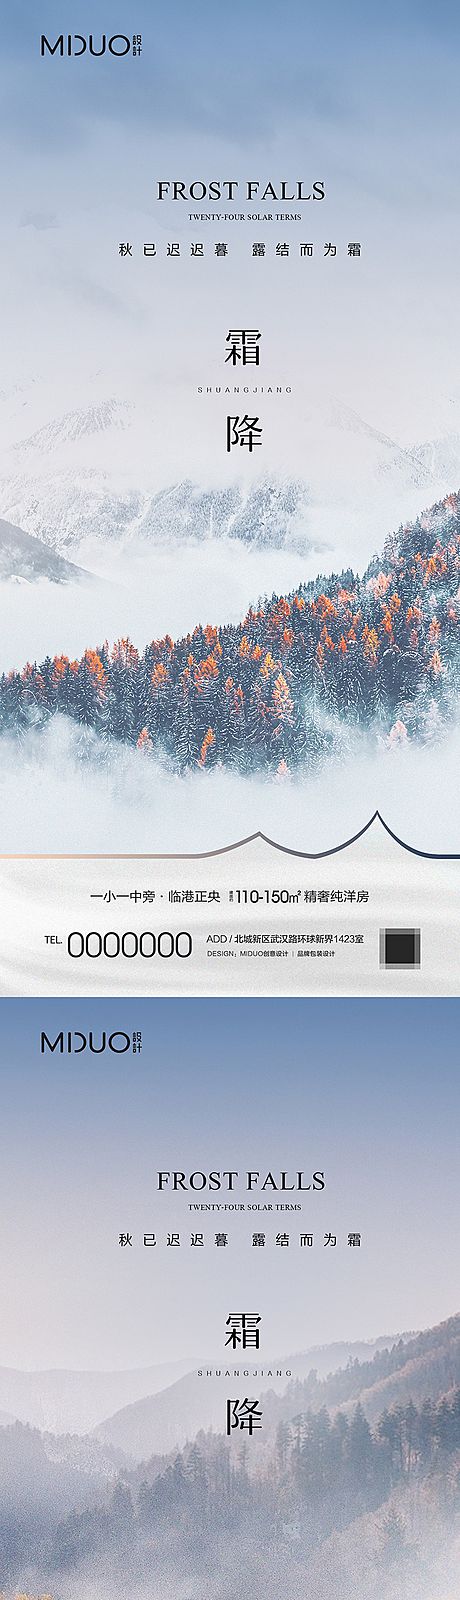 仙图网-霜降节气海报